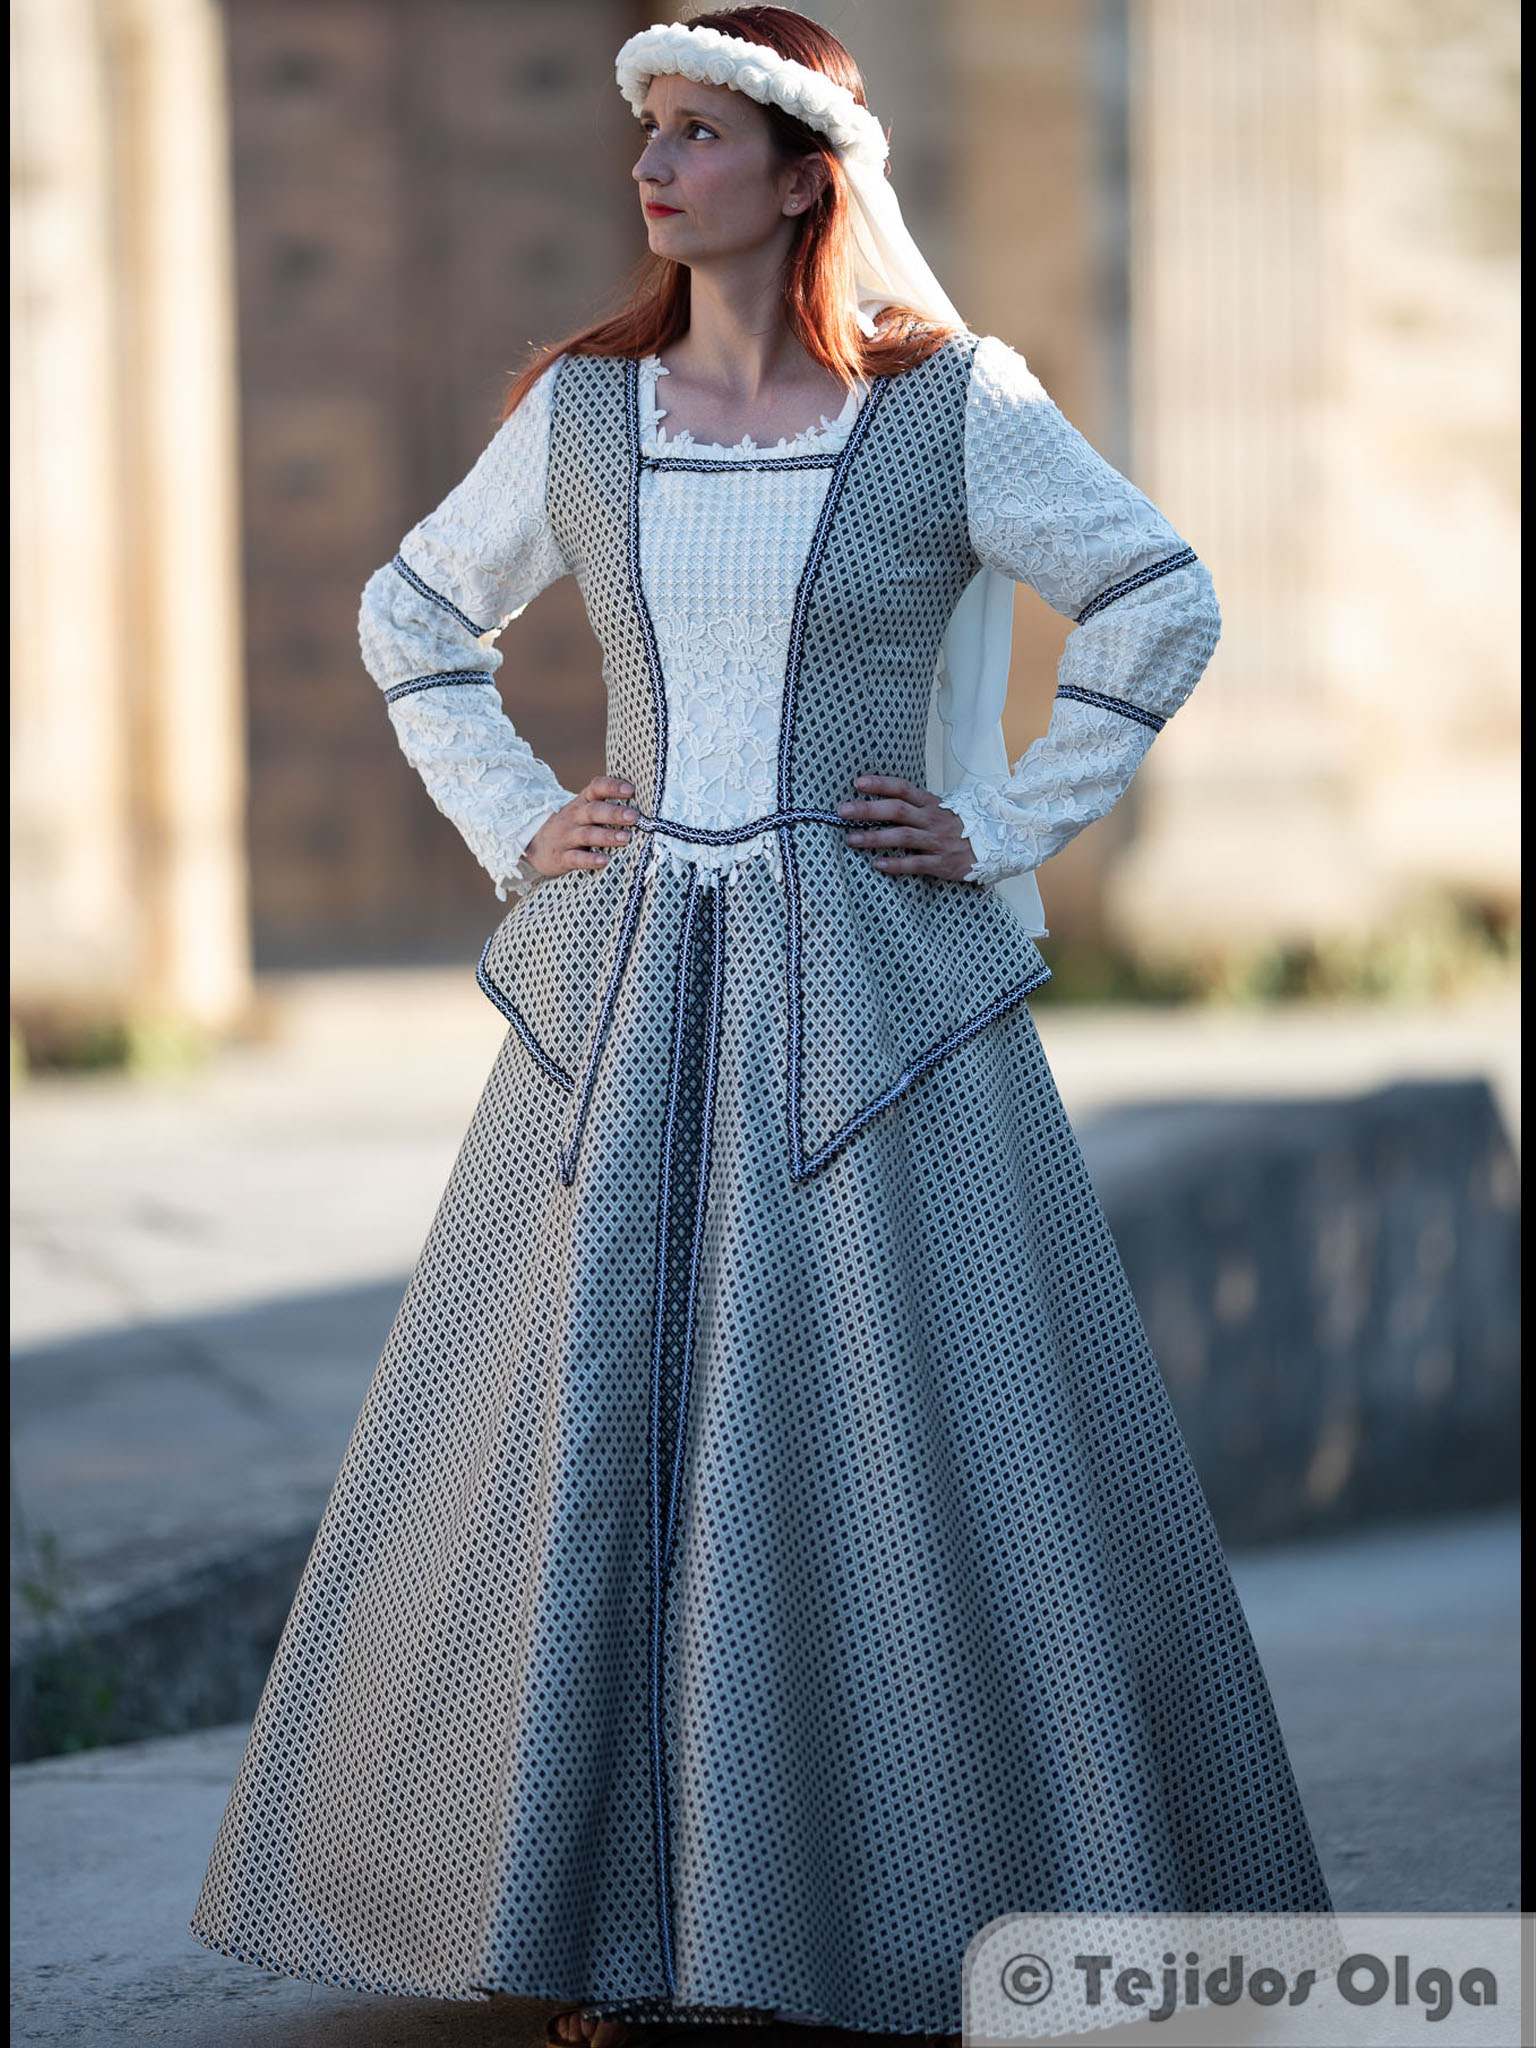 disfraz medieval mujer casero